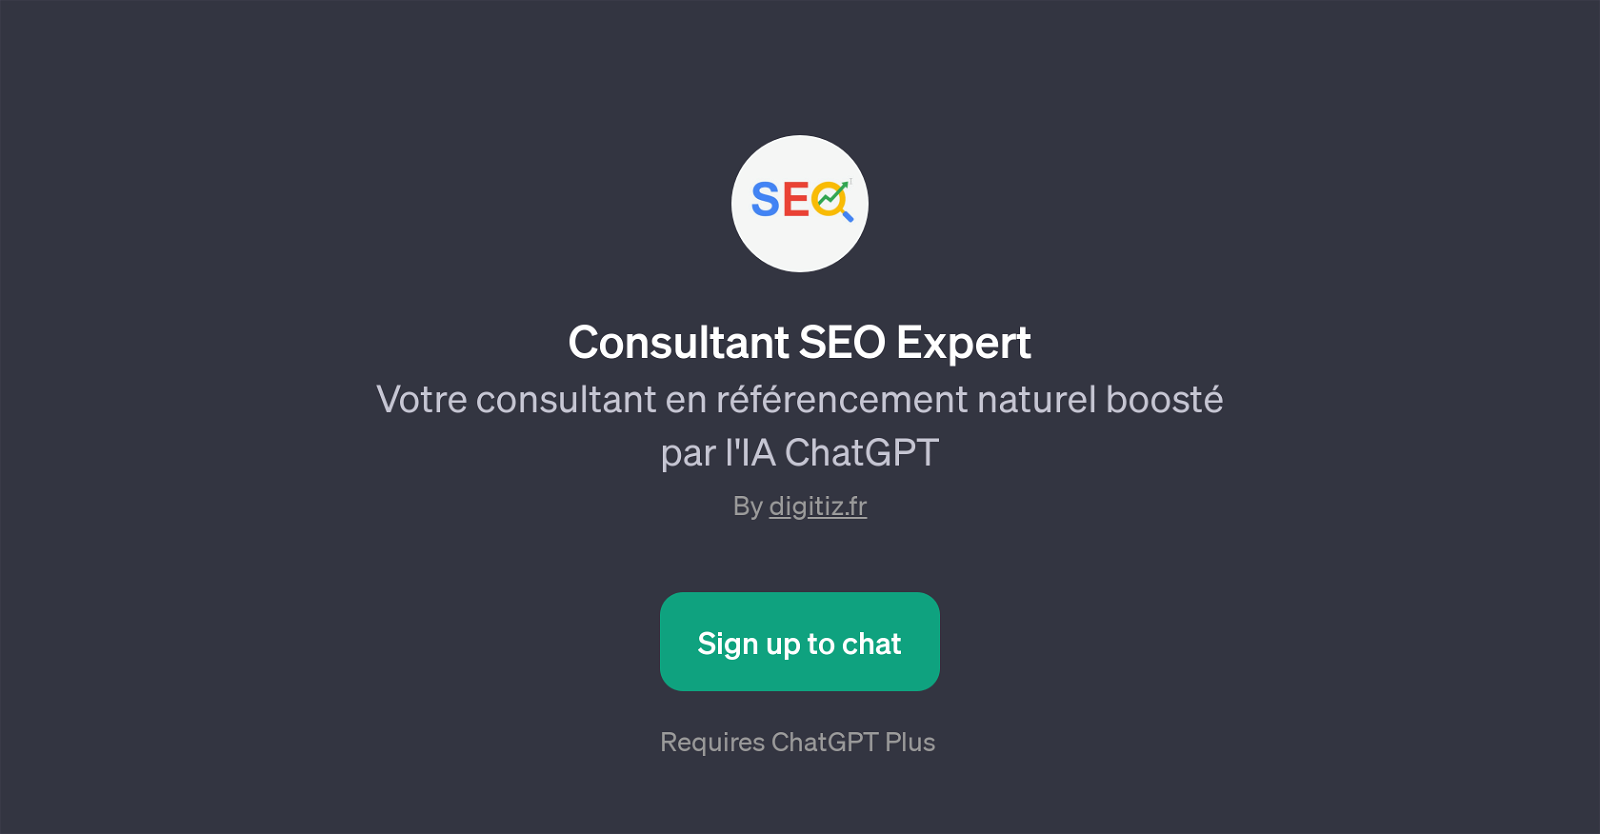 Consultant SEO Expert website